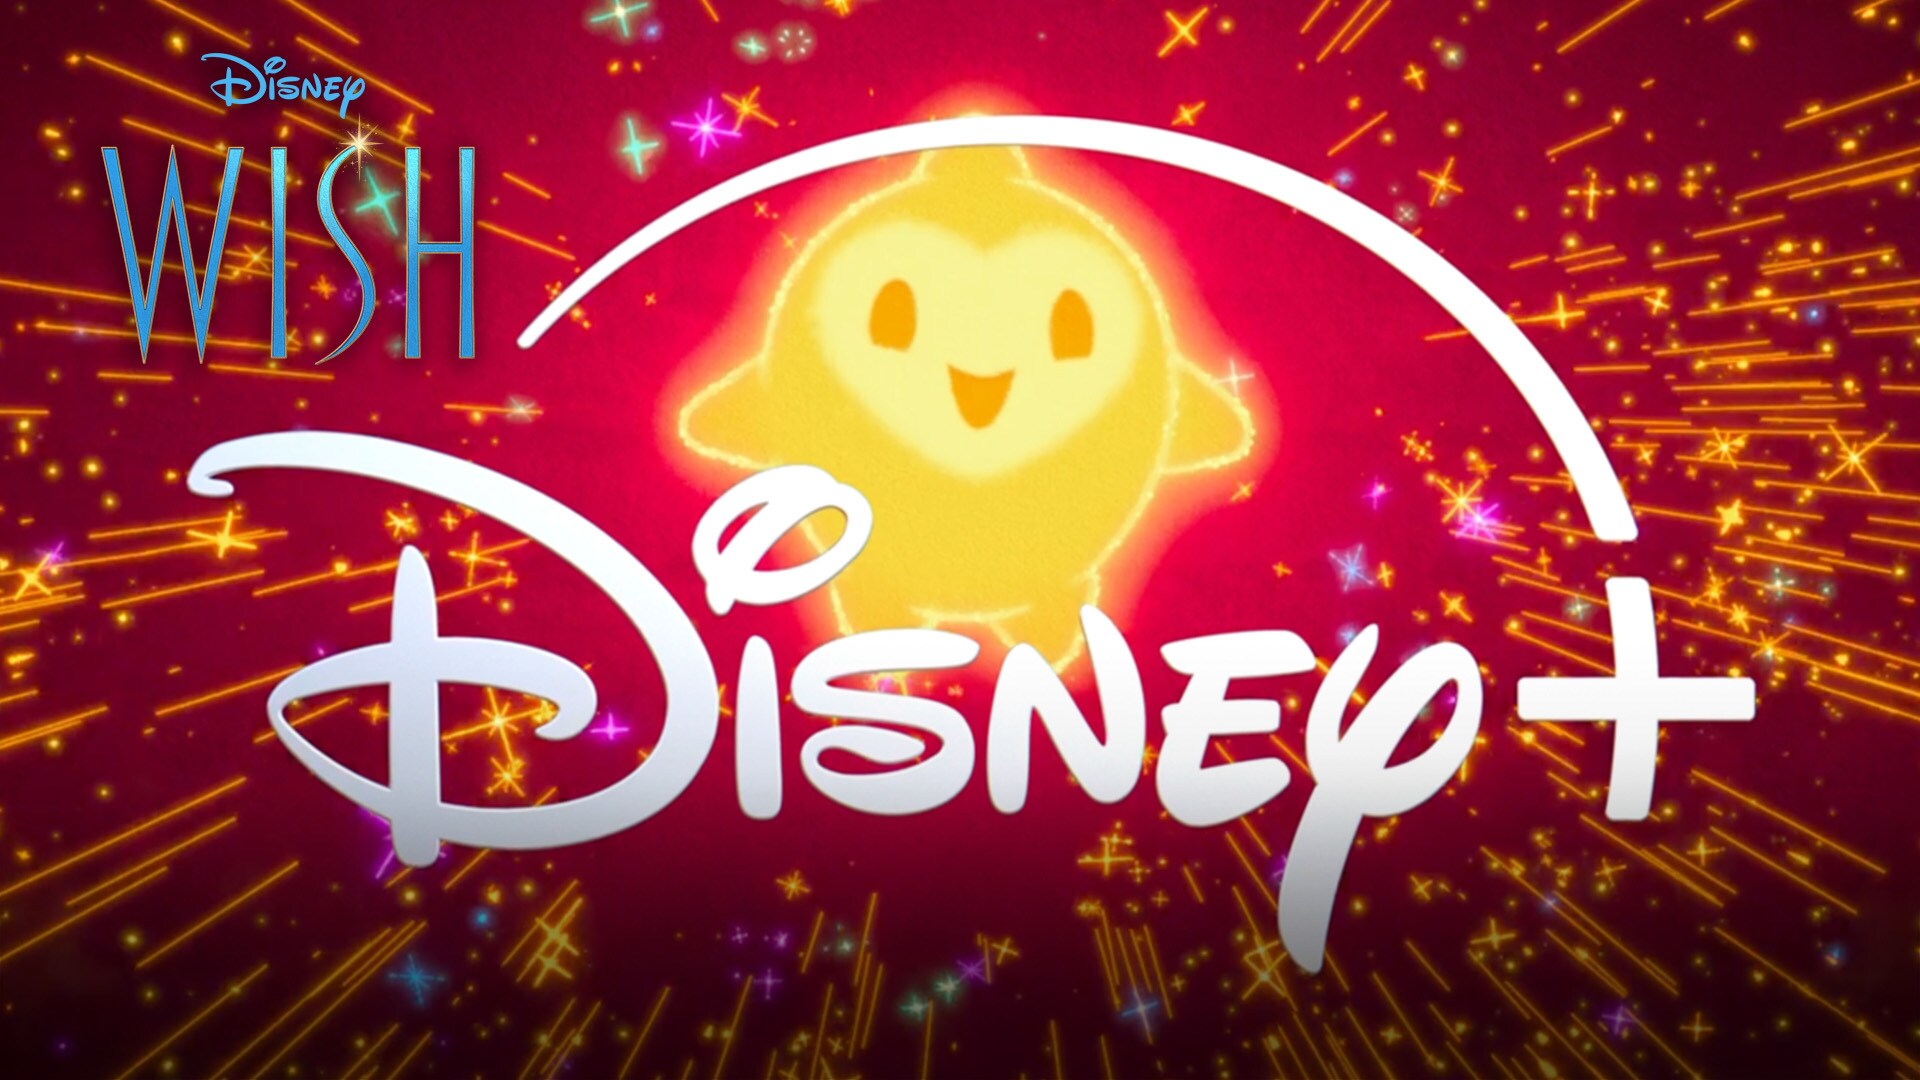 Disney’s Wish | Now Available | Disney+